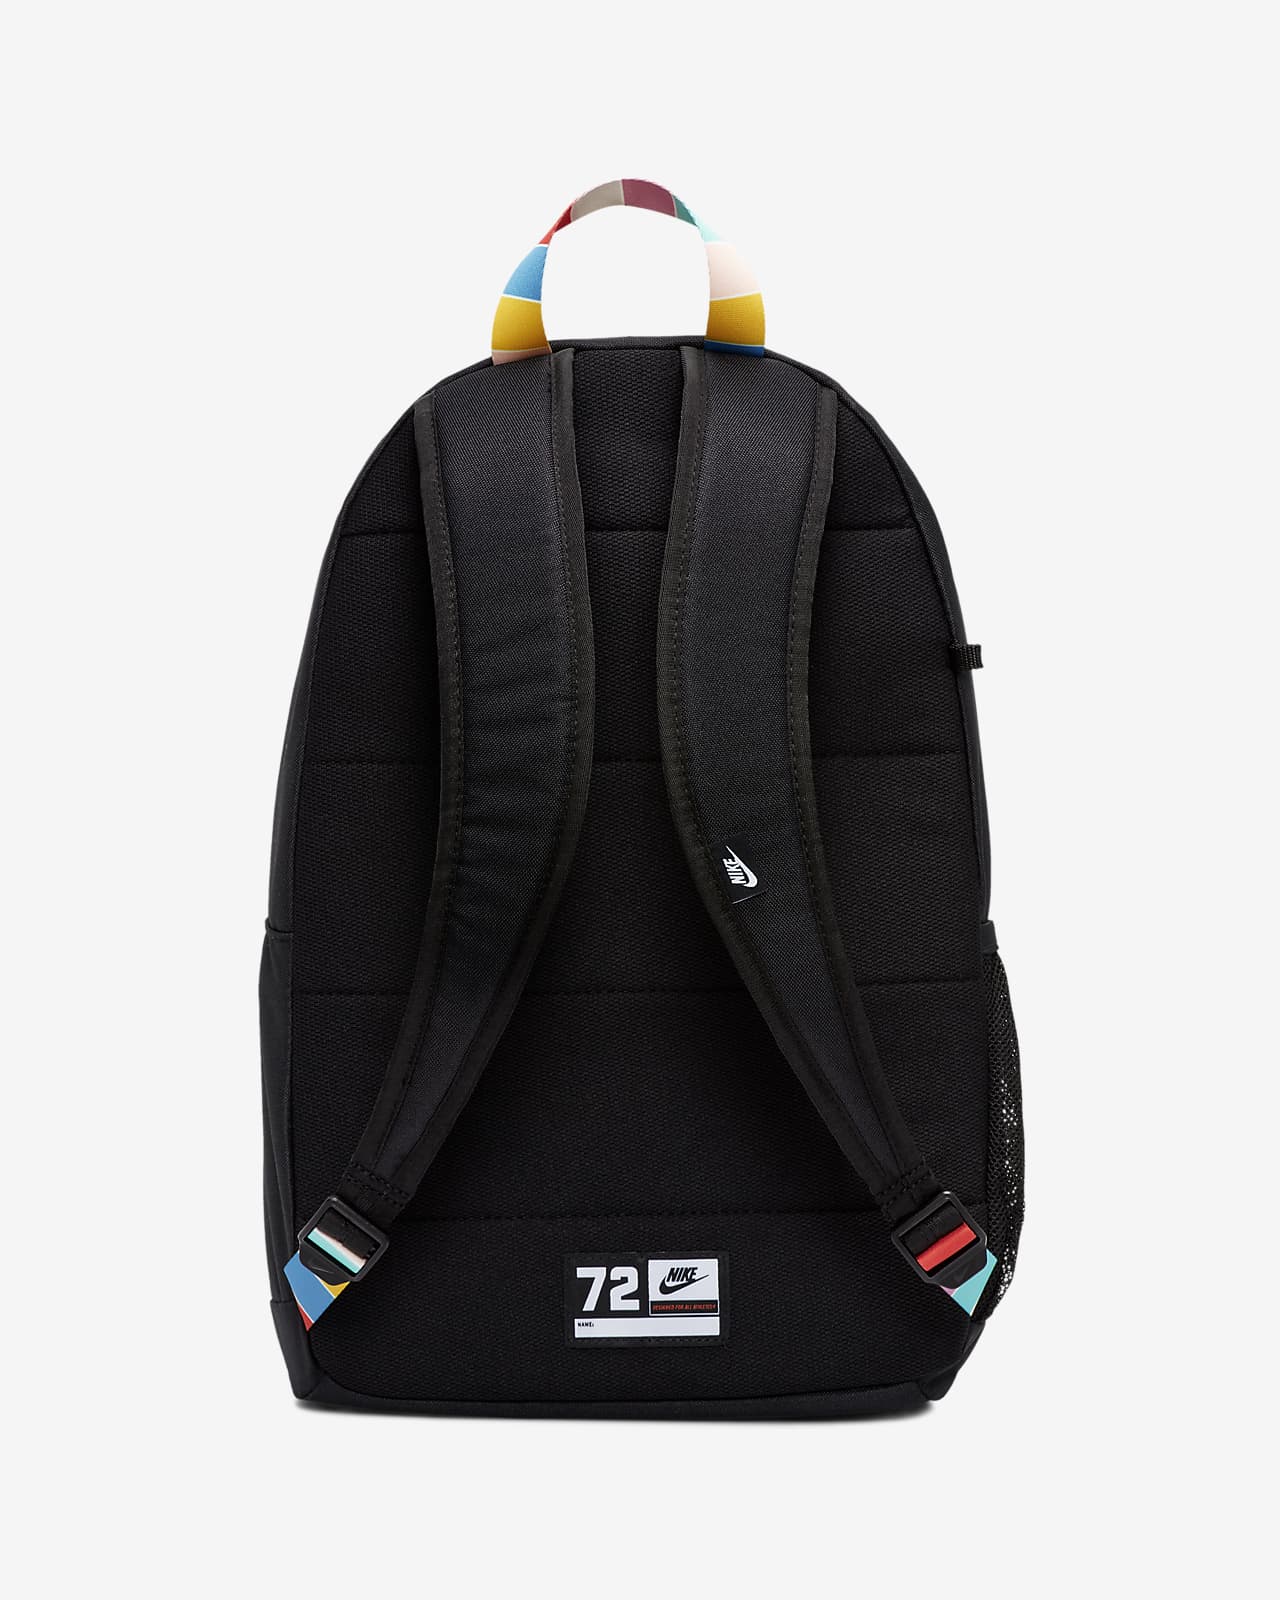 nike rainbow elemental backpack